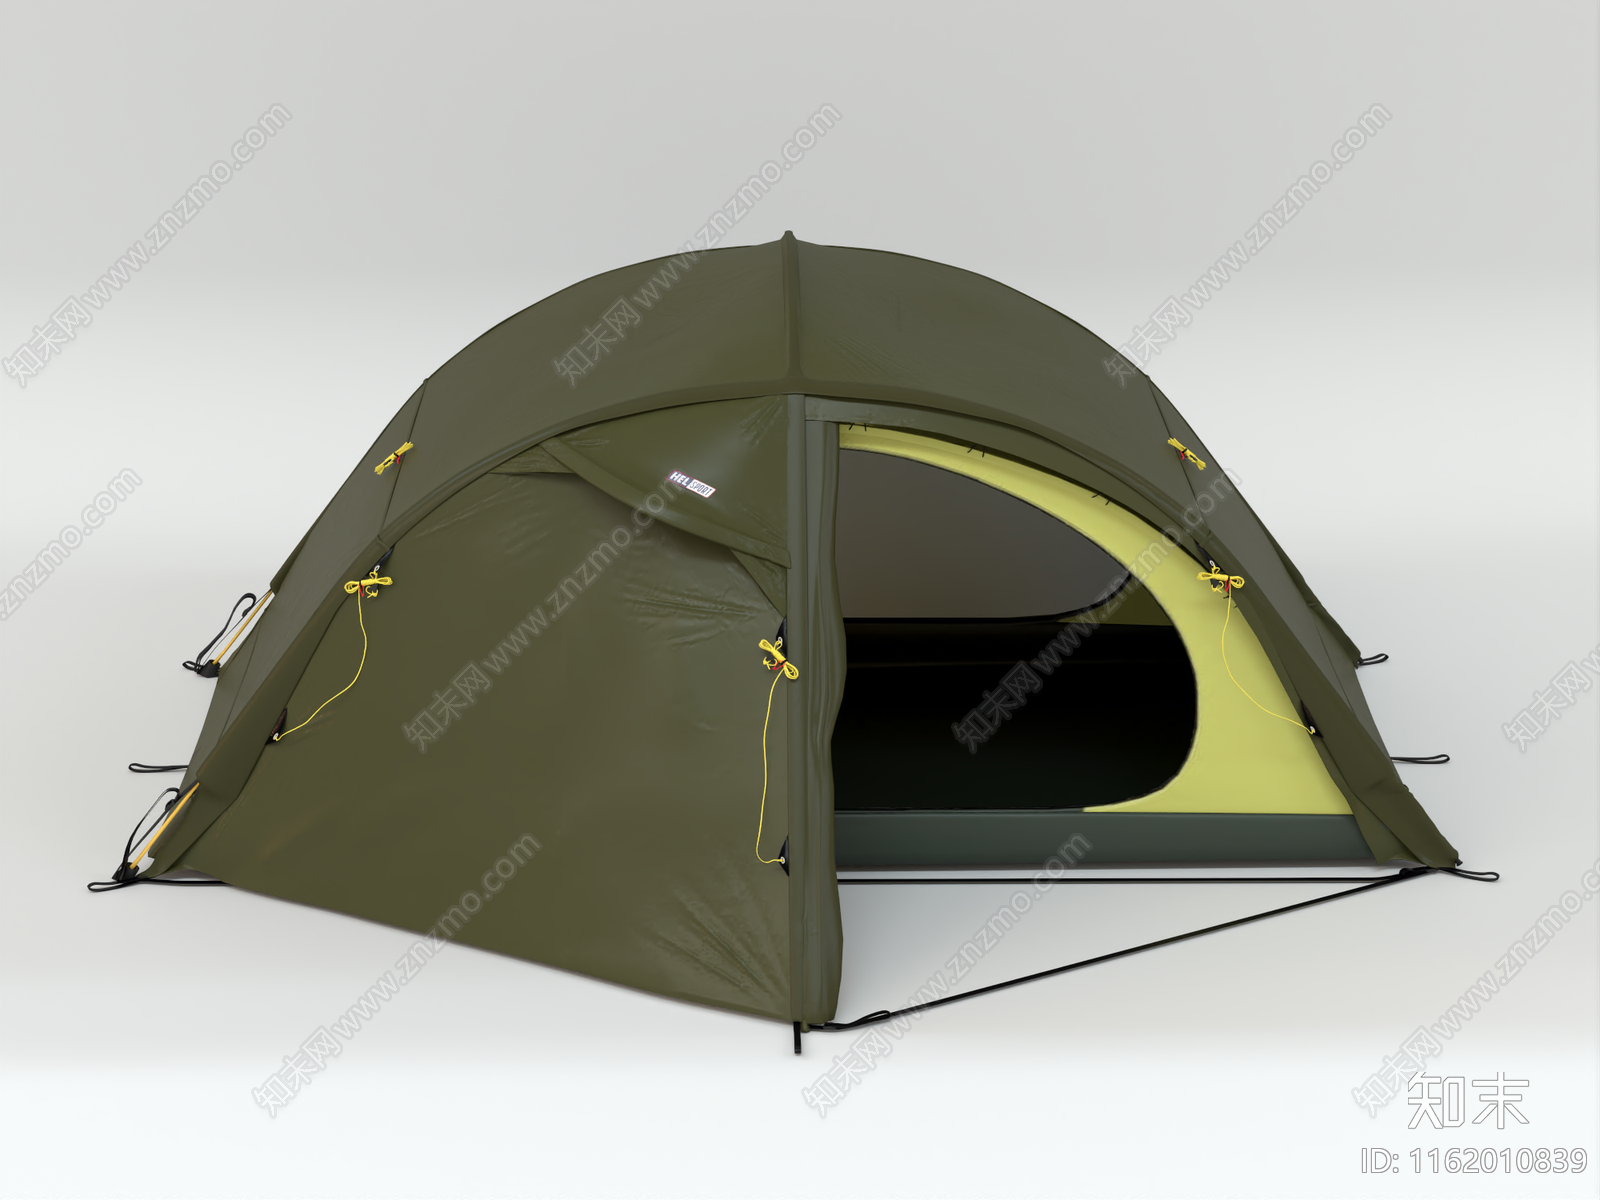 现代帐篷3D模型下载【ID:1162010839】